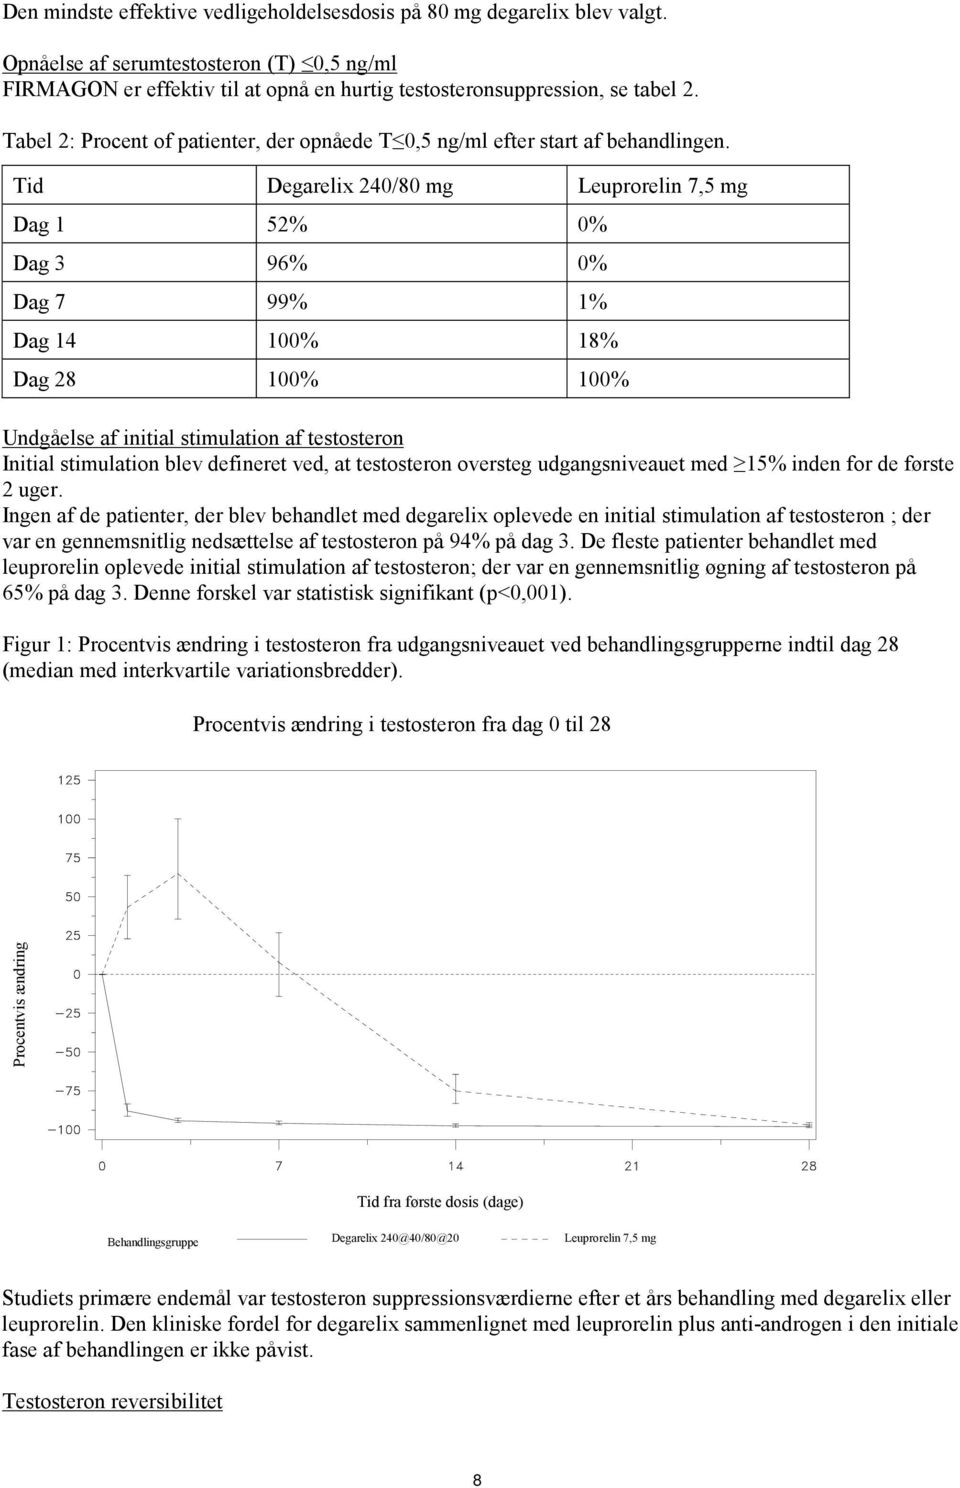 Tid Degarelix 240/80 mg Leuprorelin 7,5 mg Dag 1 52% 0% Dag 3 96% 0% Dag 7 99% 1% Dag 14 100% 18% Dag 28 100% 100% Undgåelse af initial stimulation af testosteron Initial stimulation blev defineret